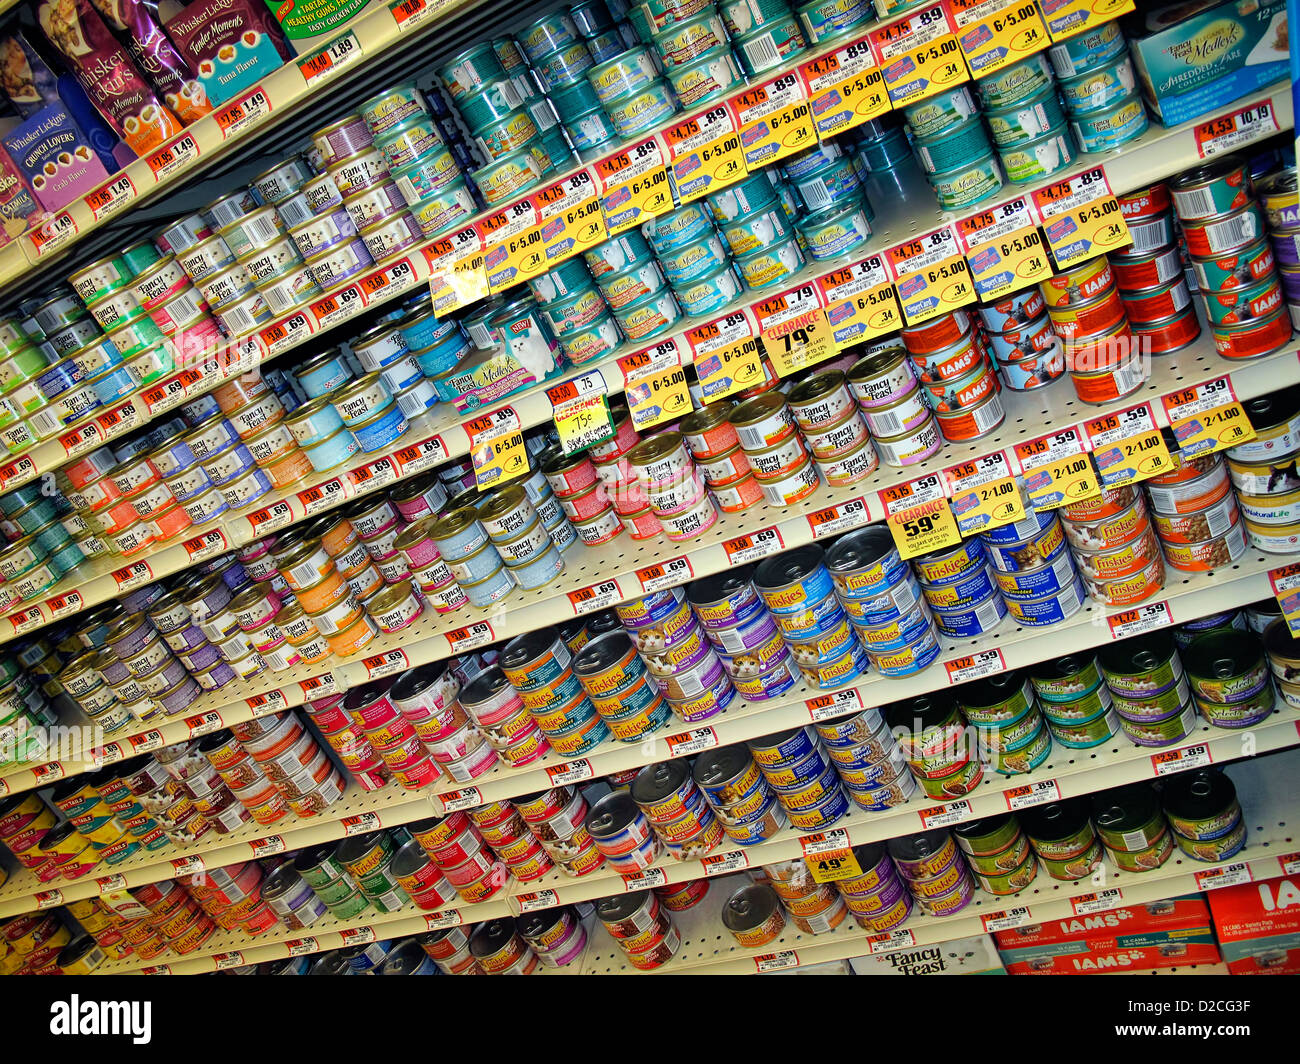 Variedad de comida para gatos productos enlatados en la estantería de una tienda. Foto de stock